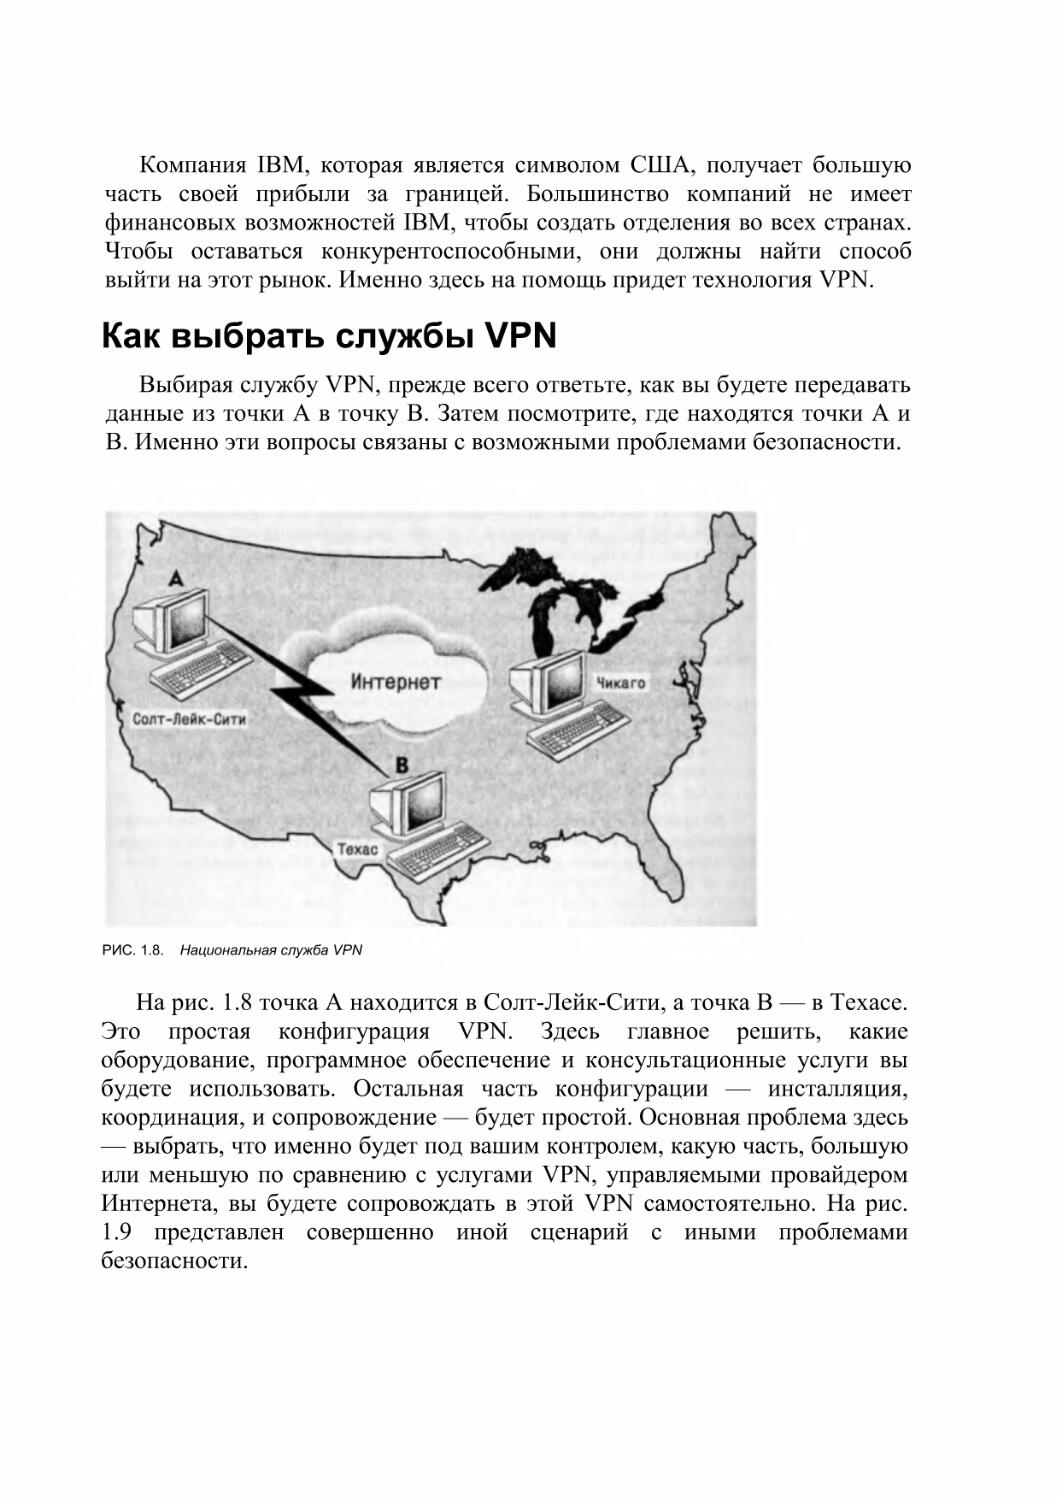 Как выбрать службы VPN